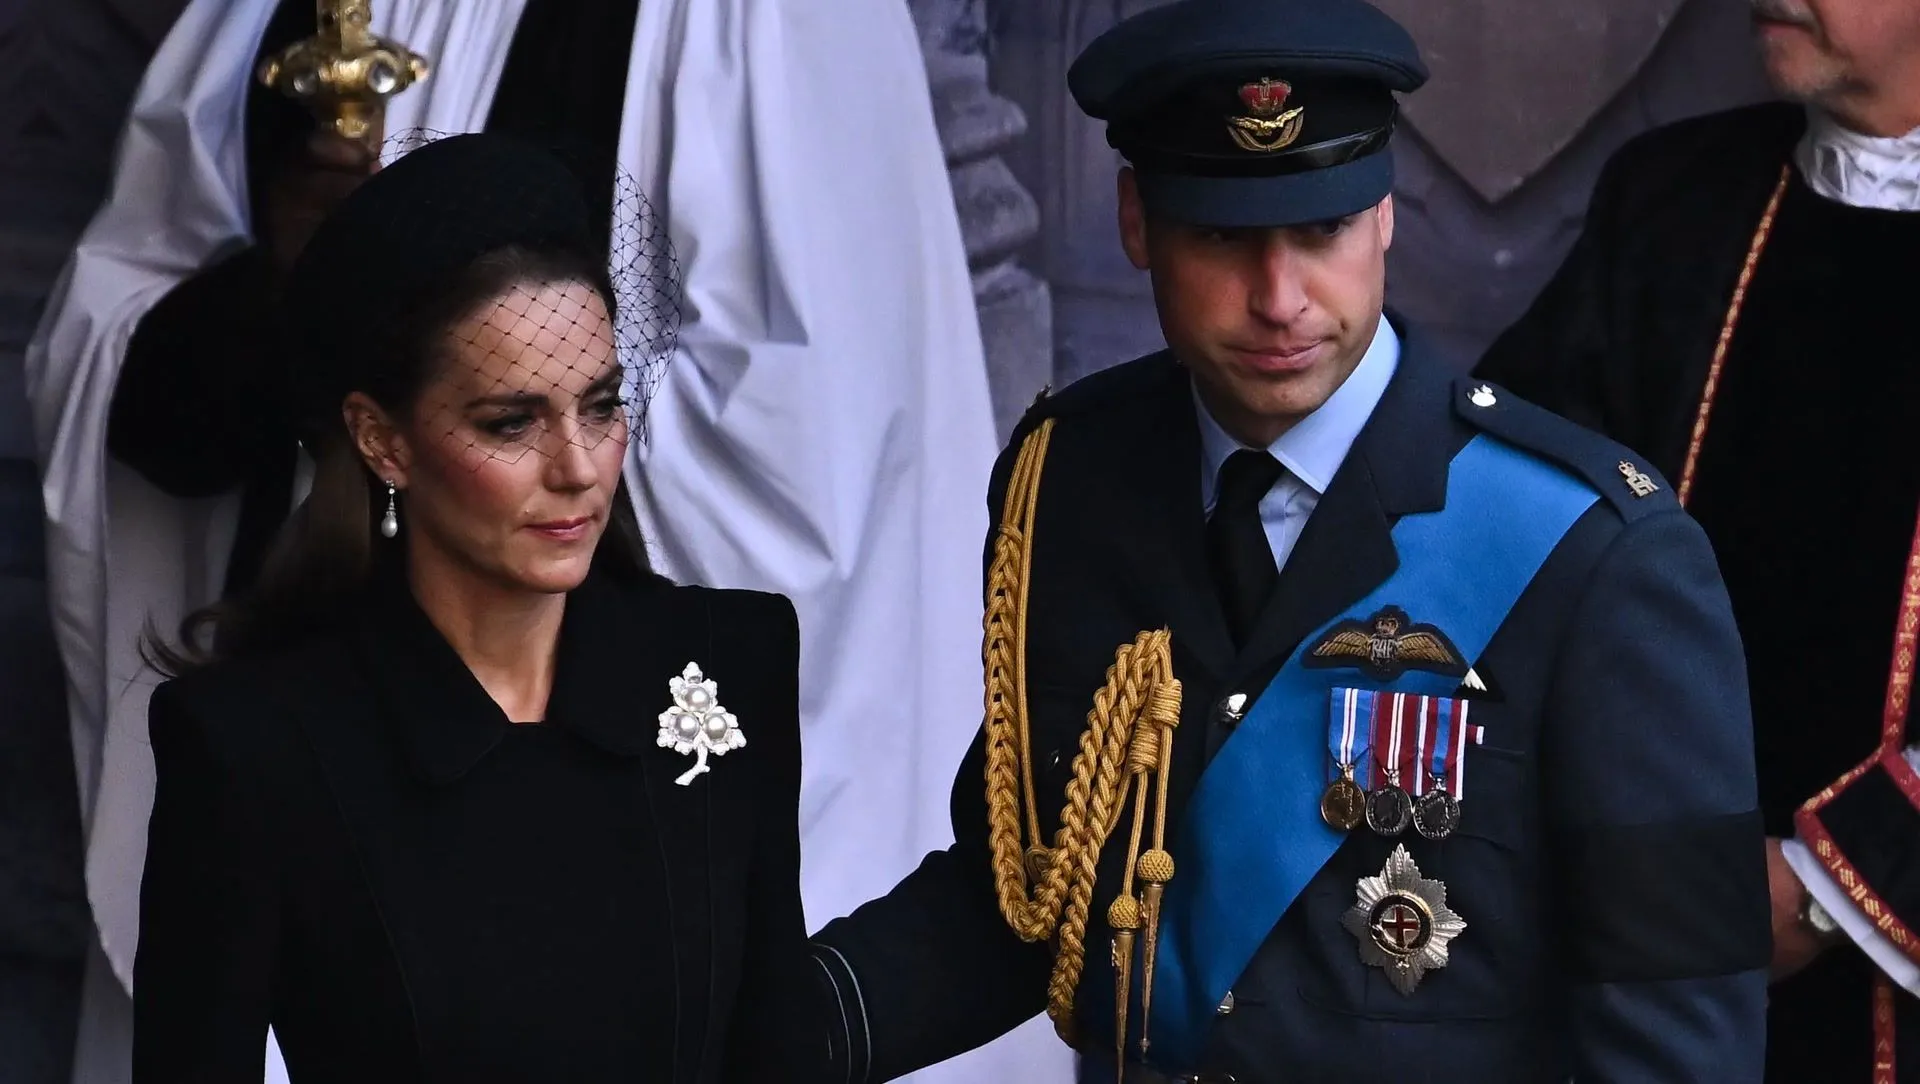 O Príncipe William conforta a Duquesa Kate com este gesto: Fotografias passam por baixo da pele